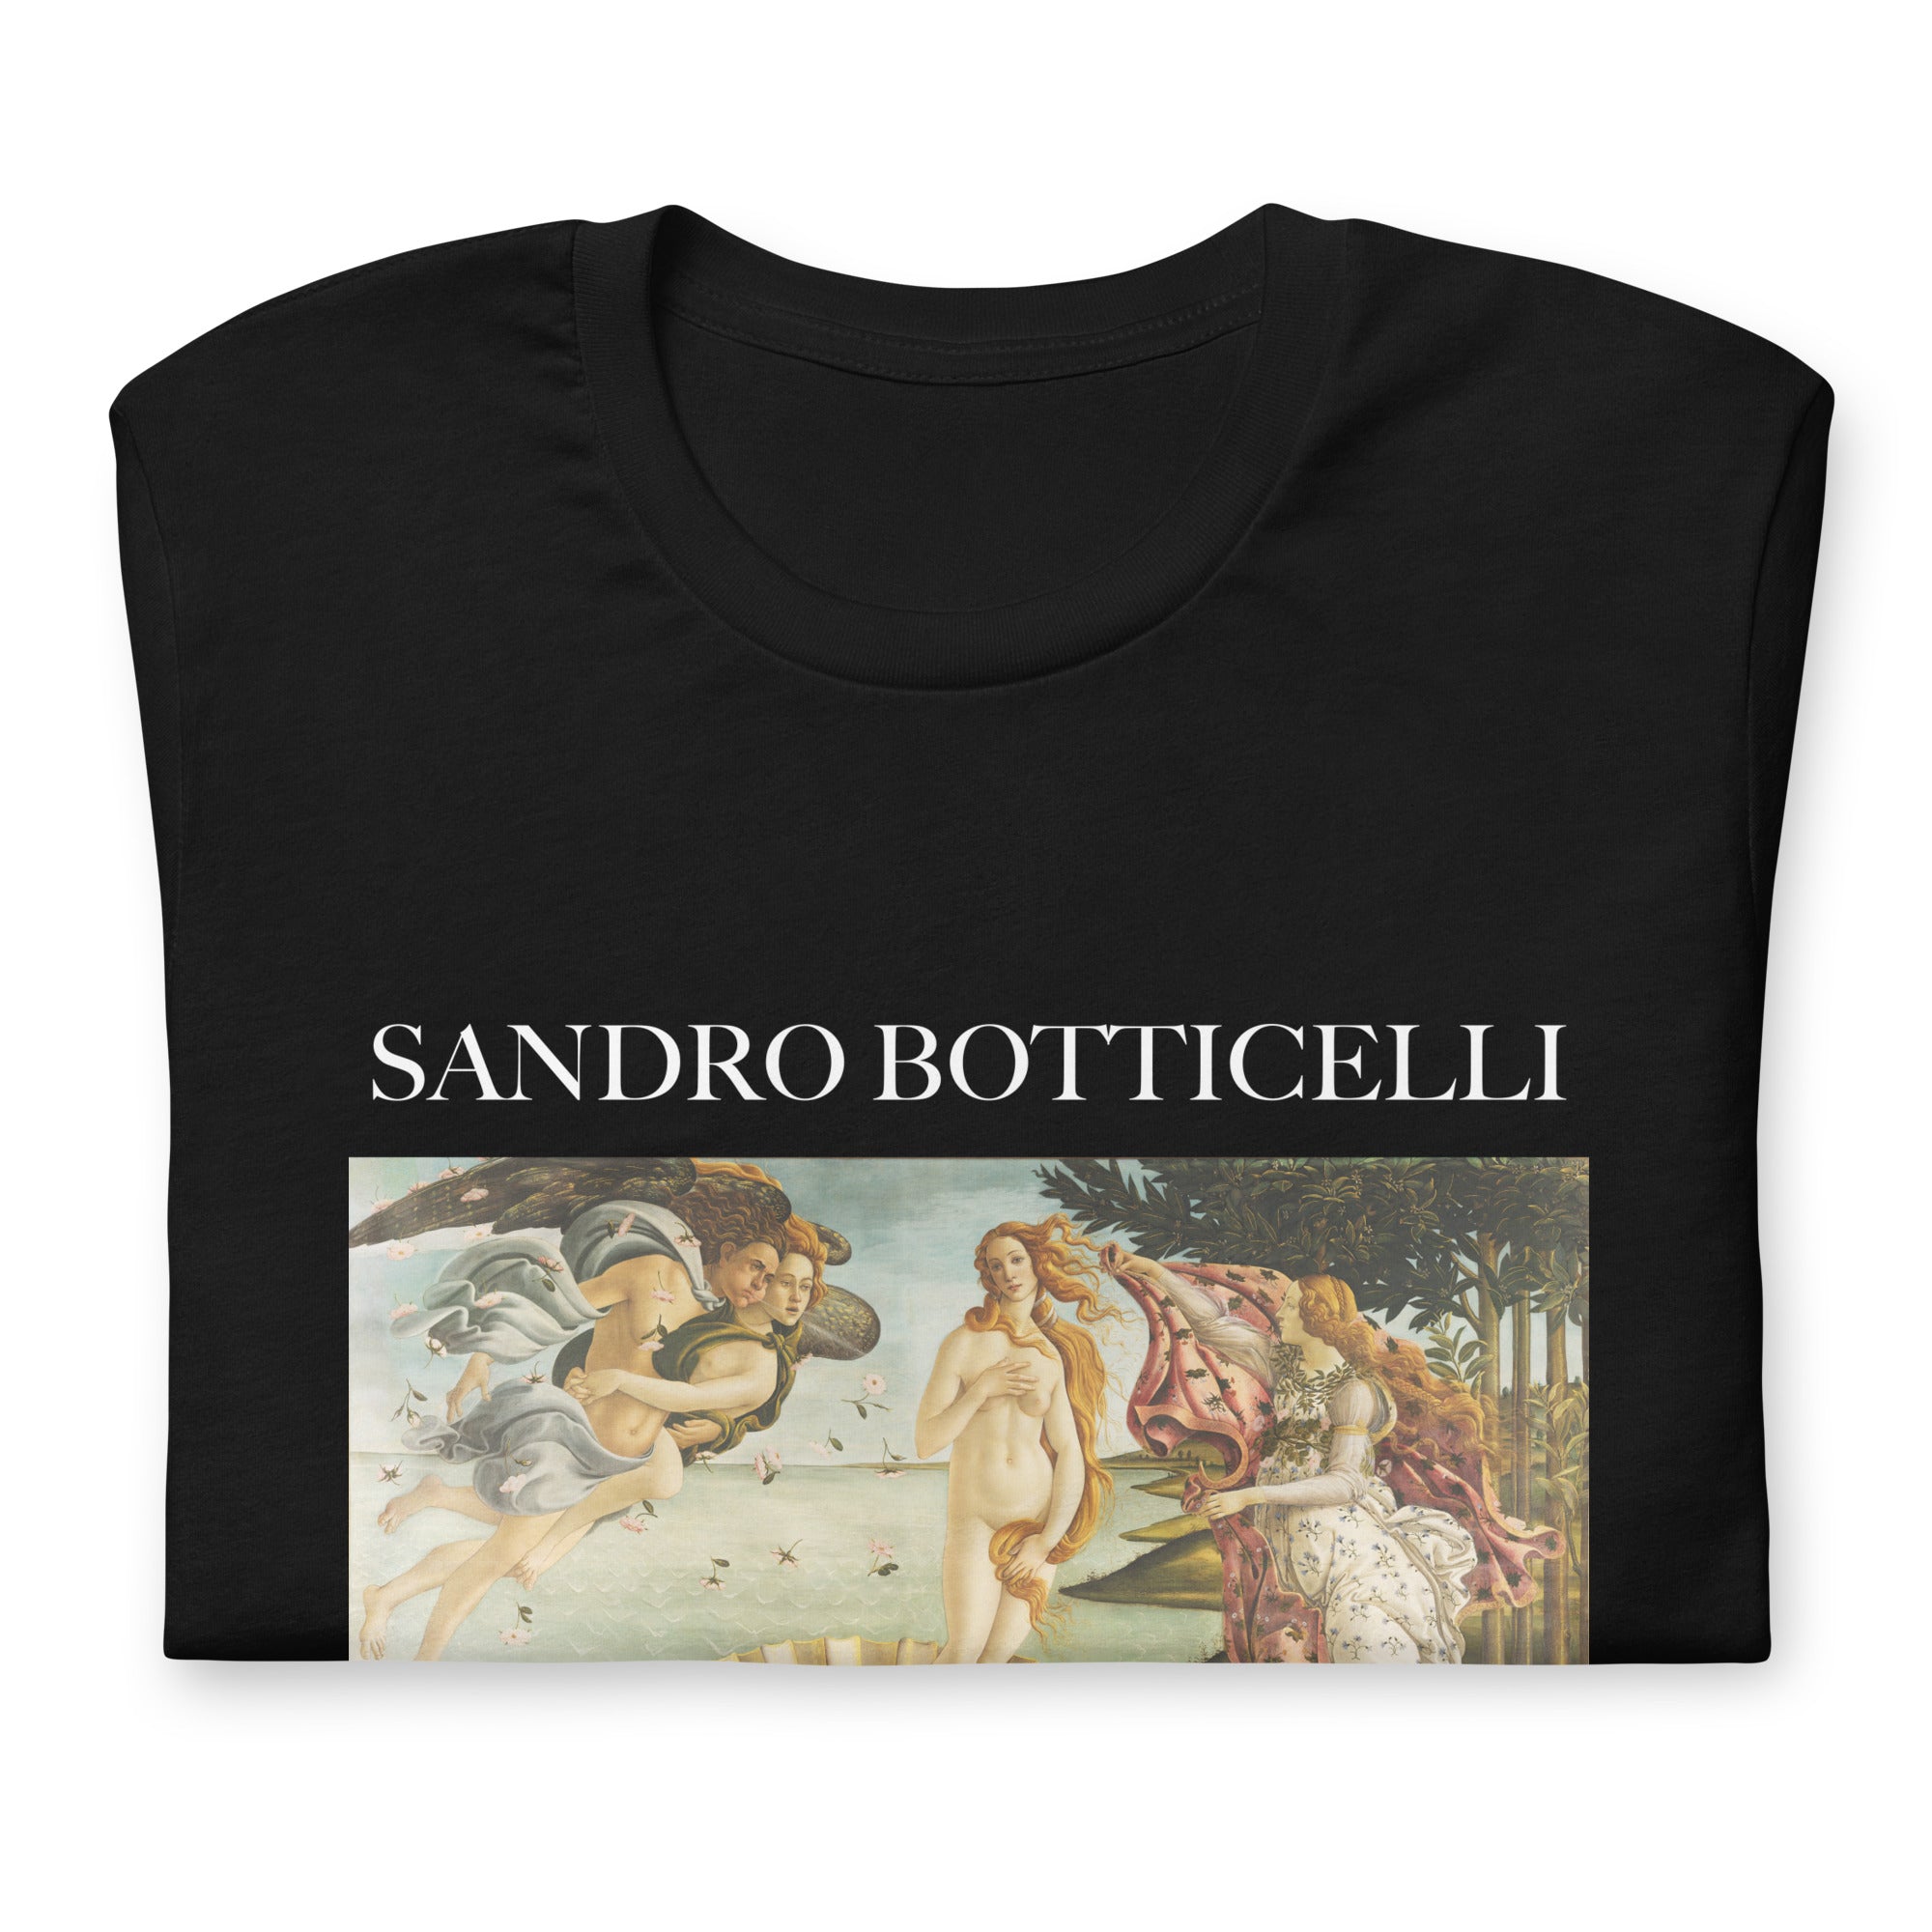 T-Shirt mit berühmtem Gemälde „Die Geburt der Venus“ von Sandro Botticelli | Unisex-T-Shirt im klassischen Kunststil